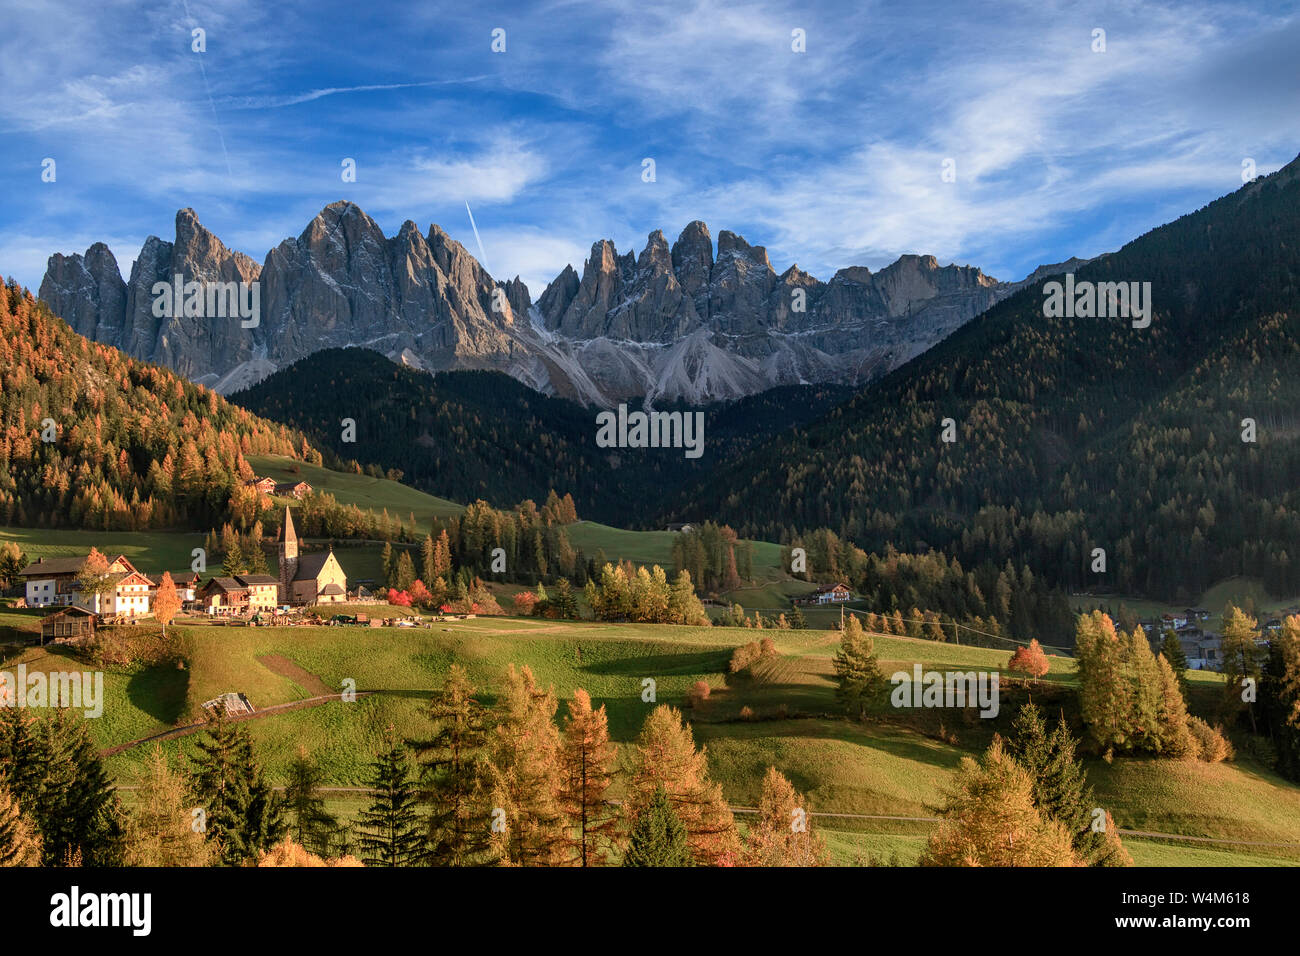 La vallée de l'automne Funes et ancienne chapelle Santa Maddalena. Val di Funes, Odle Mountain Group. Les montagnes des Dolomites, Italie Banque D'Images